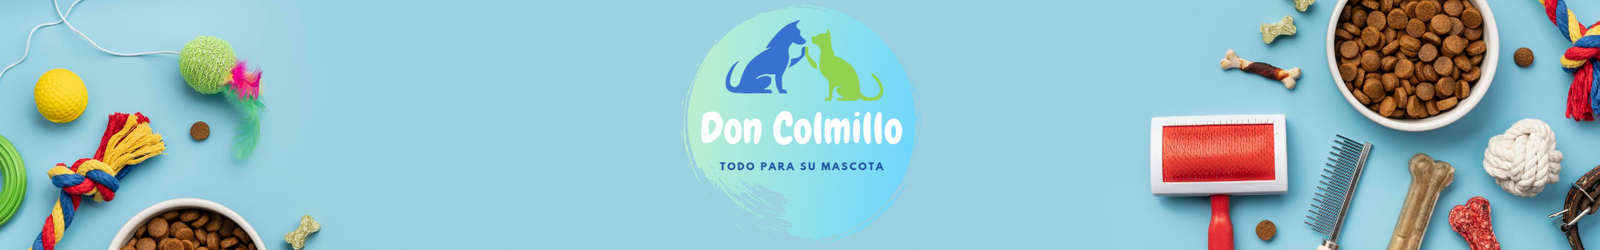 Don colmillo Pet Shop - Alimento balanceado a domicilio (3)